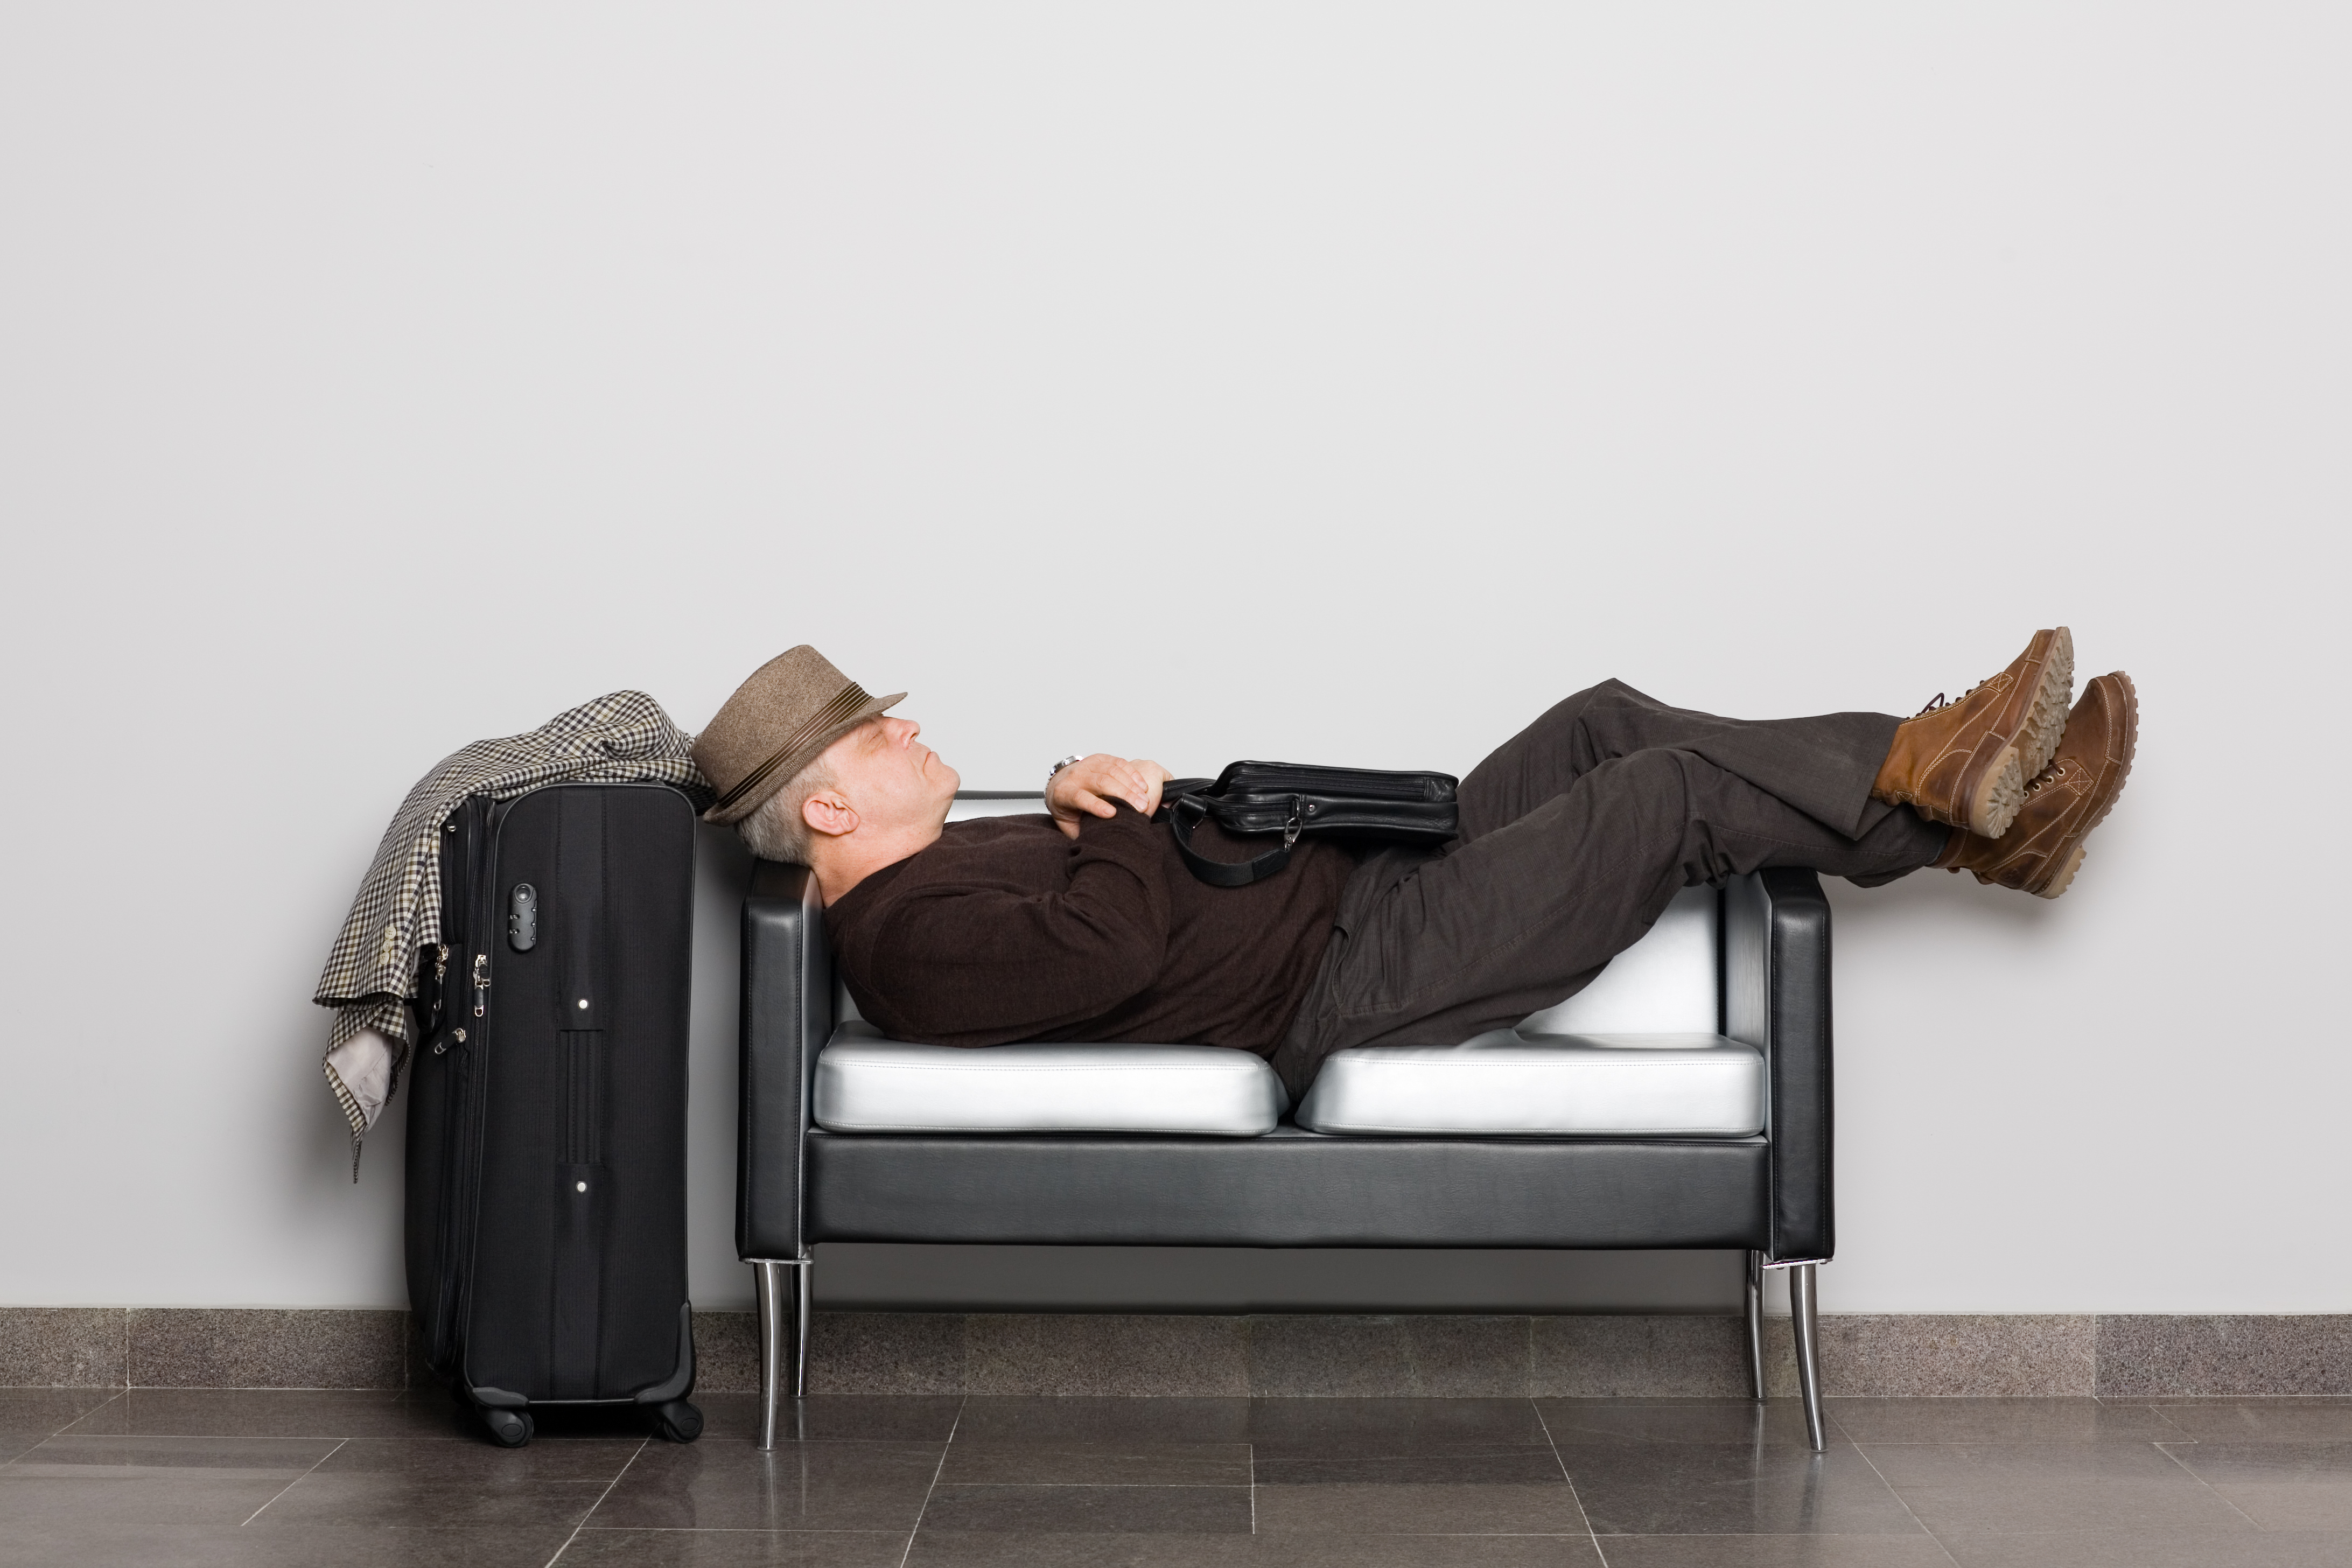 Mann der auf einer kleinen Couch schläft mit Koffer neben der Couch, weil er kein Hotel in der Nähe des Flughafen Wiens gefunden hat.